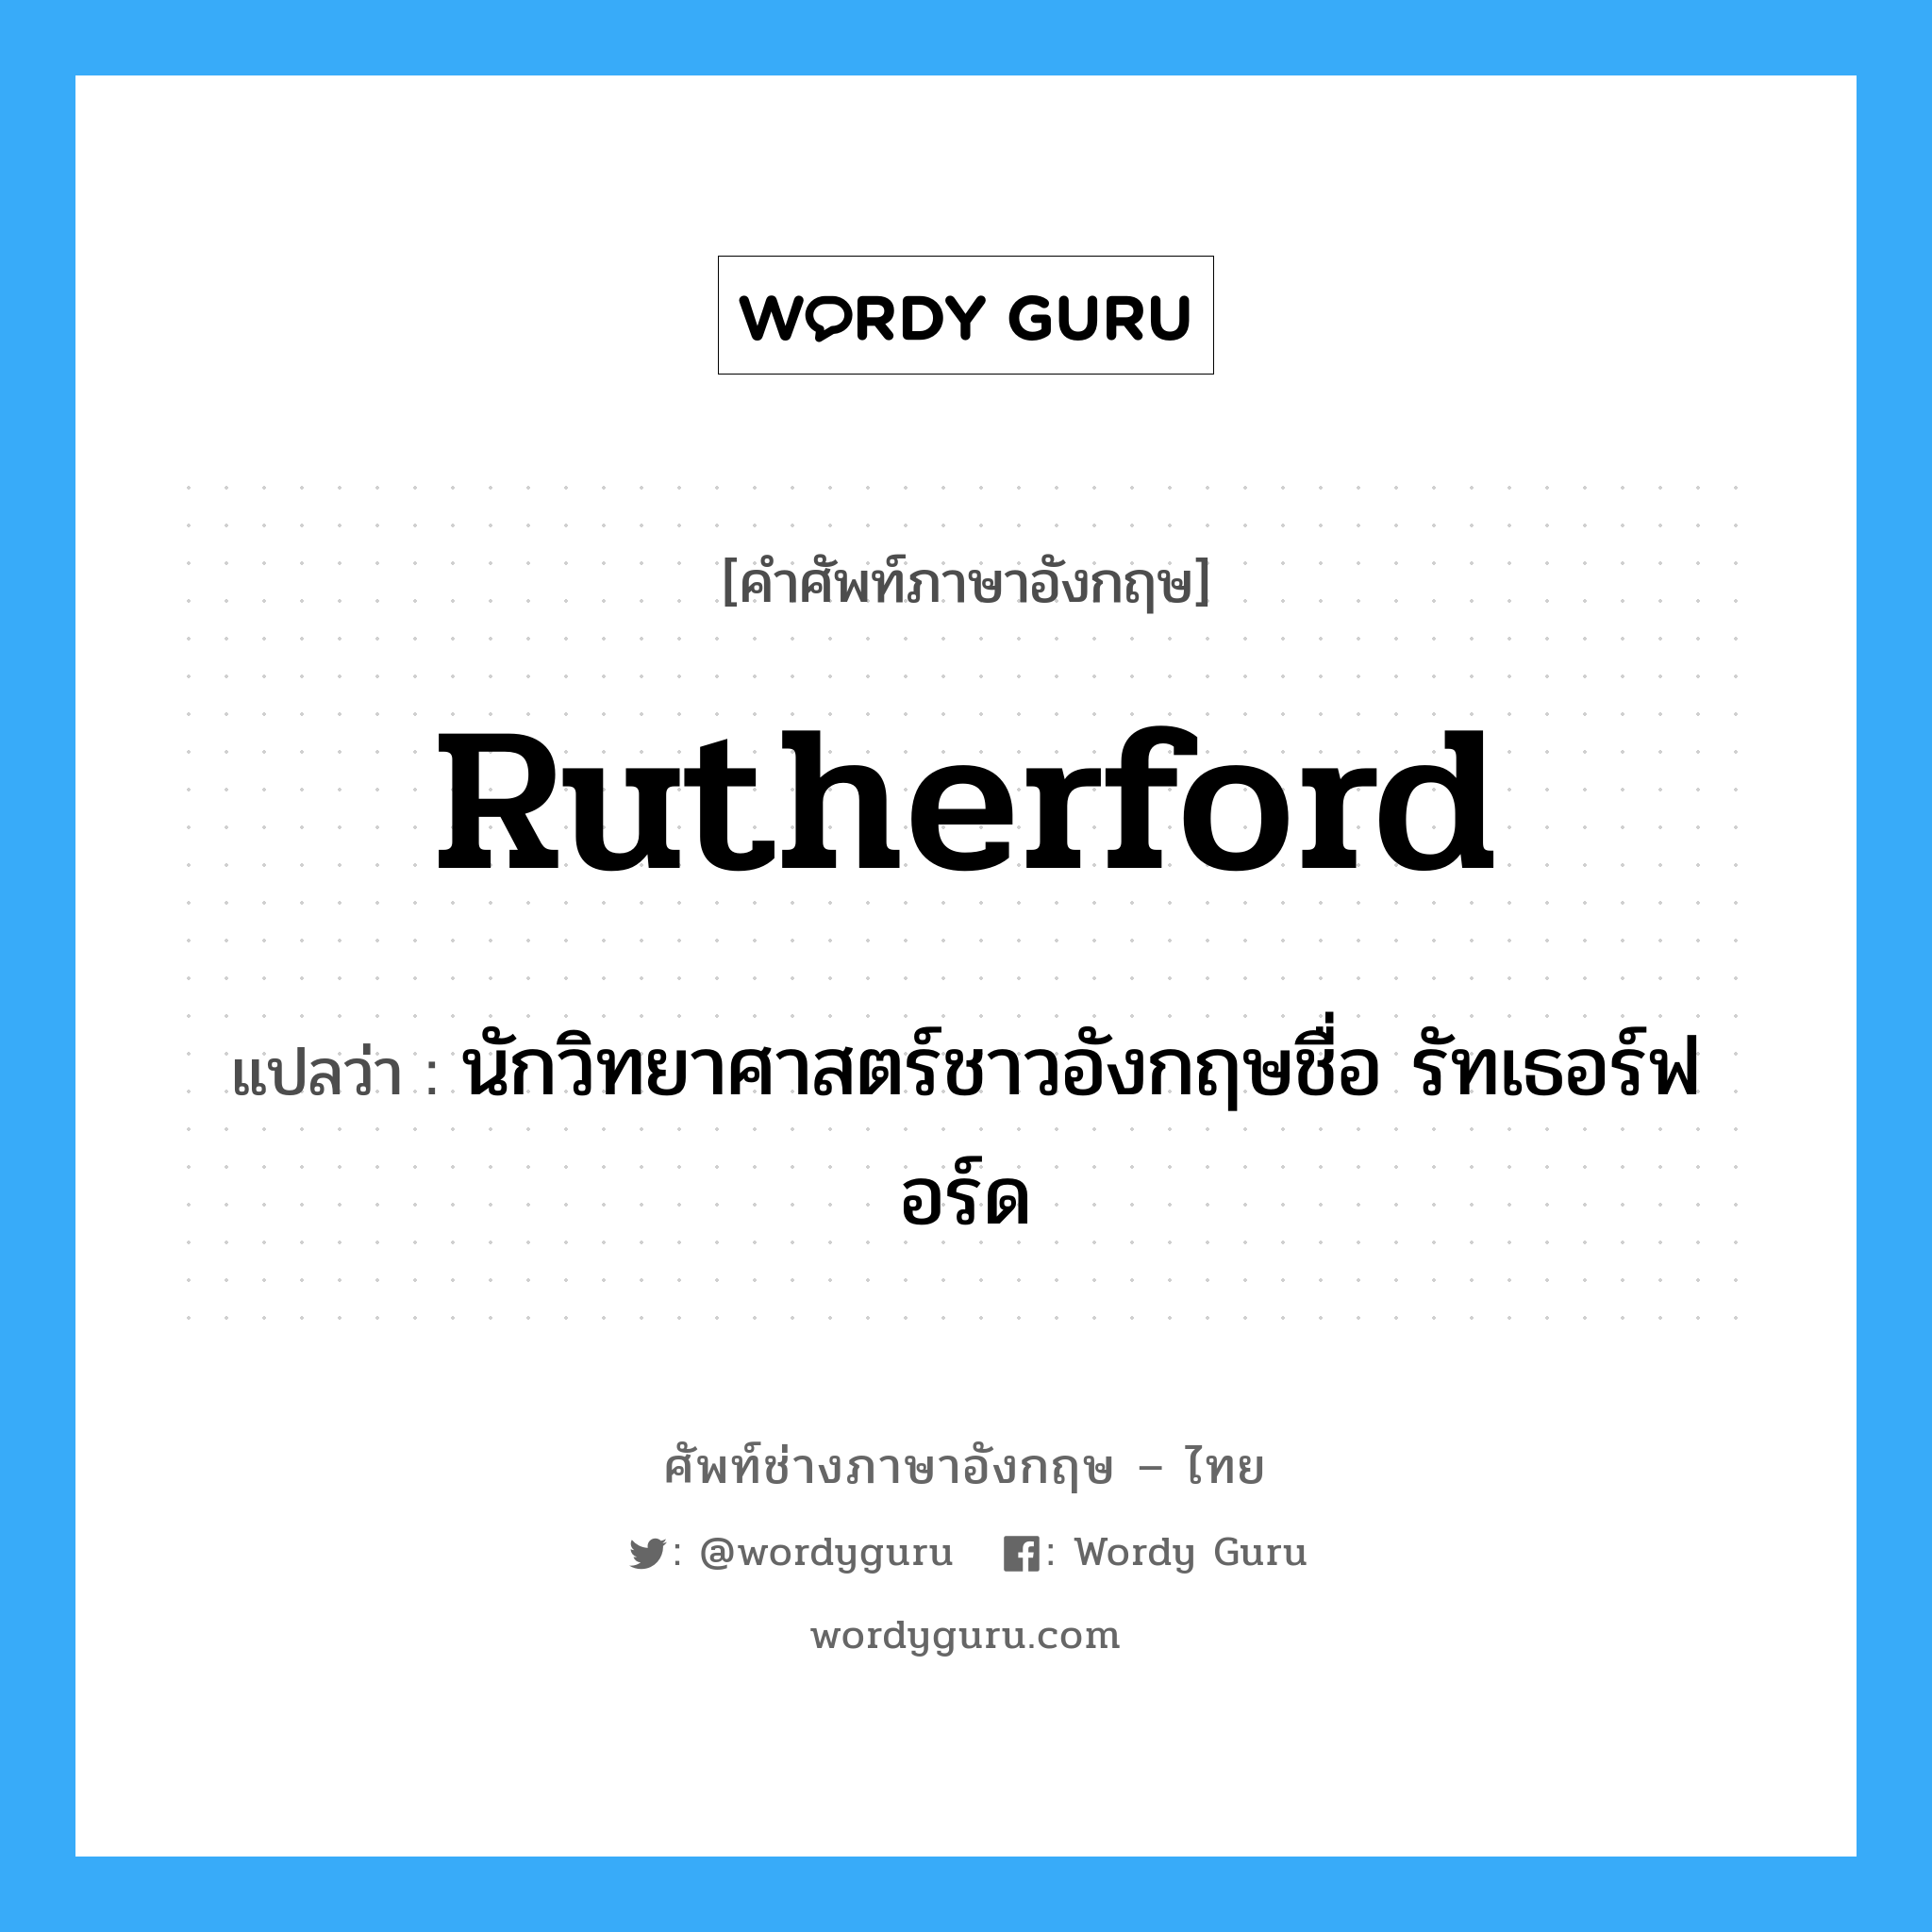 นักวิทยาศาสตร์ชาวอังกฤษชื่อ รัทเธอร์ฟอร์ด ภาษาอังกฤษ?, คำศัพท์ช่างภาษาอังกฤษ - ไทย นักวิทยาศาสตร์ชาวอังกฤษชื่อ รัทเธอร์ฟอร์ด คำศัพท์ภาษาอังกฤษ นักวิทยาศาสตร์ชาวอังกฤษชื่อ รัทเธอร์ฟอร์ด แปลว่า Rutherford